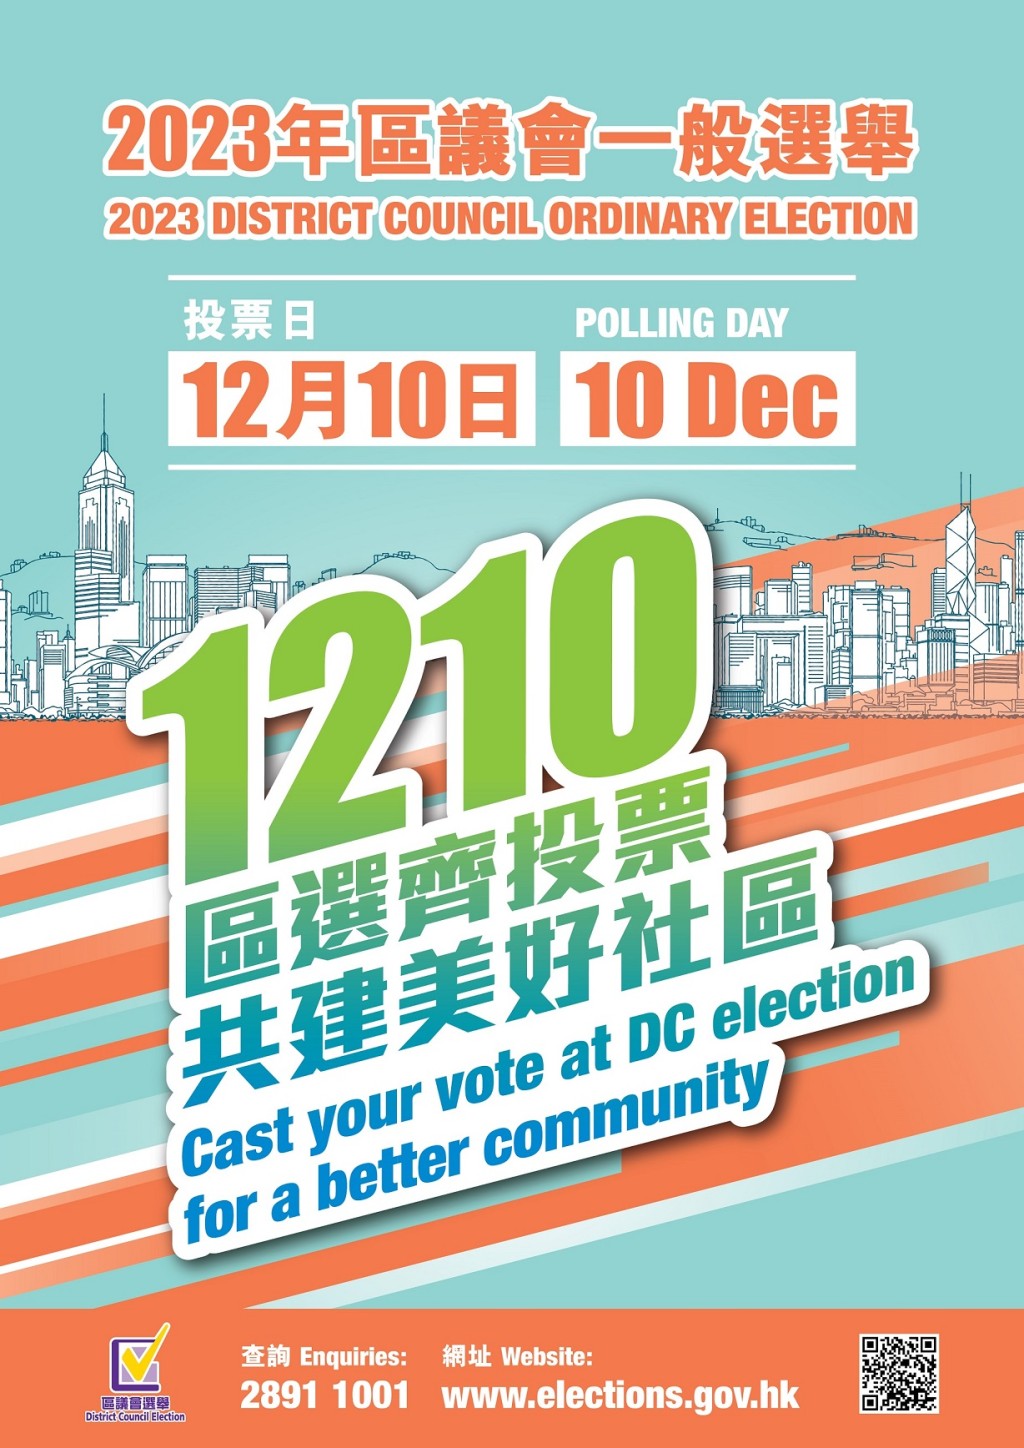 2023年區議會選舉將於12月10日進行投票。